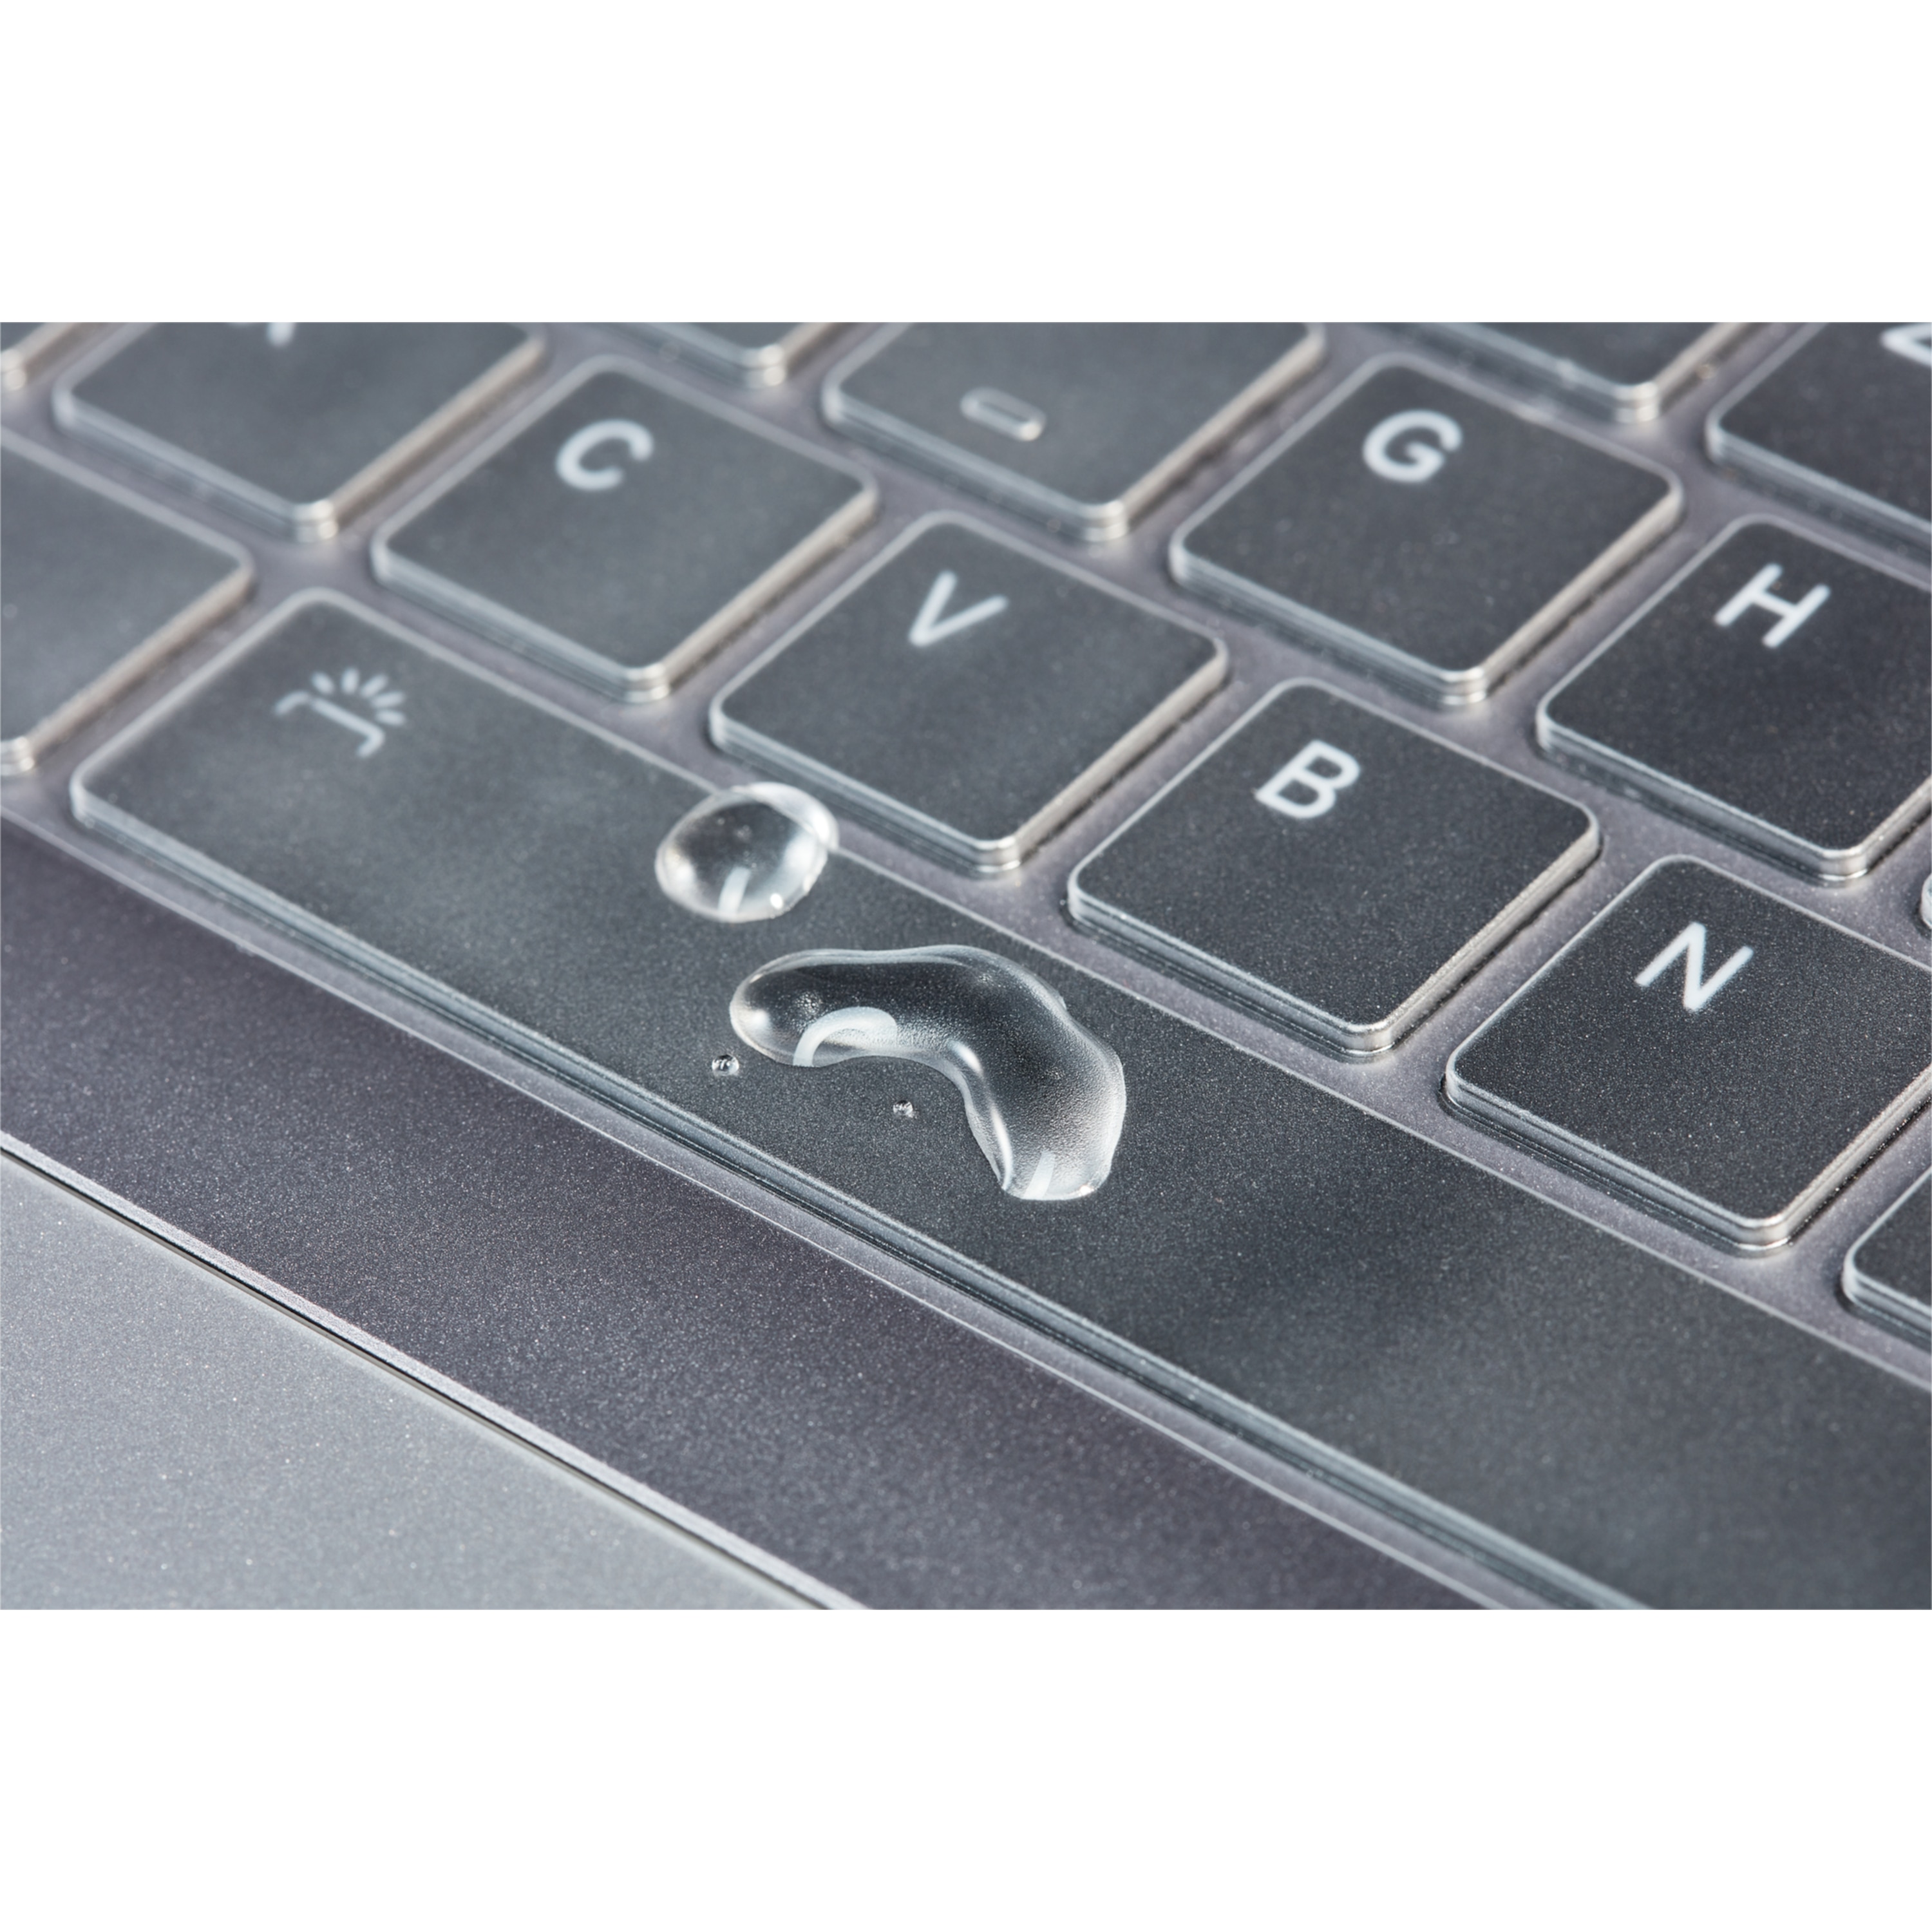 MEDION® TPU Tastatur Cover MD 61099, dünner und klarer Tastaturschutz vor Schmutz, Krümeln, Staub und Wasser